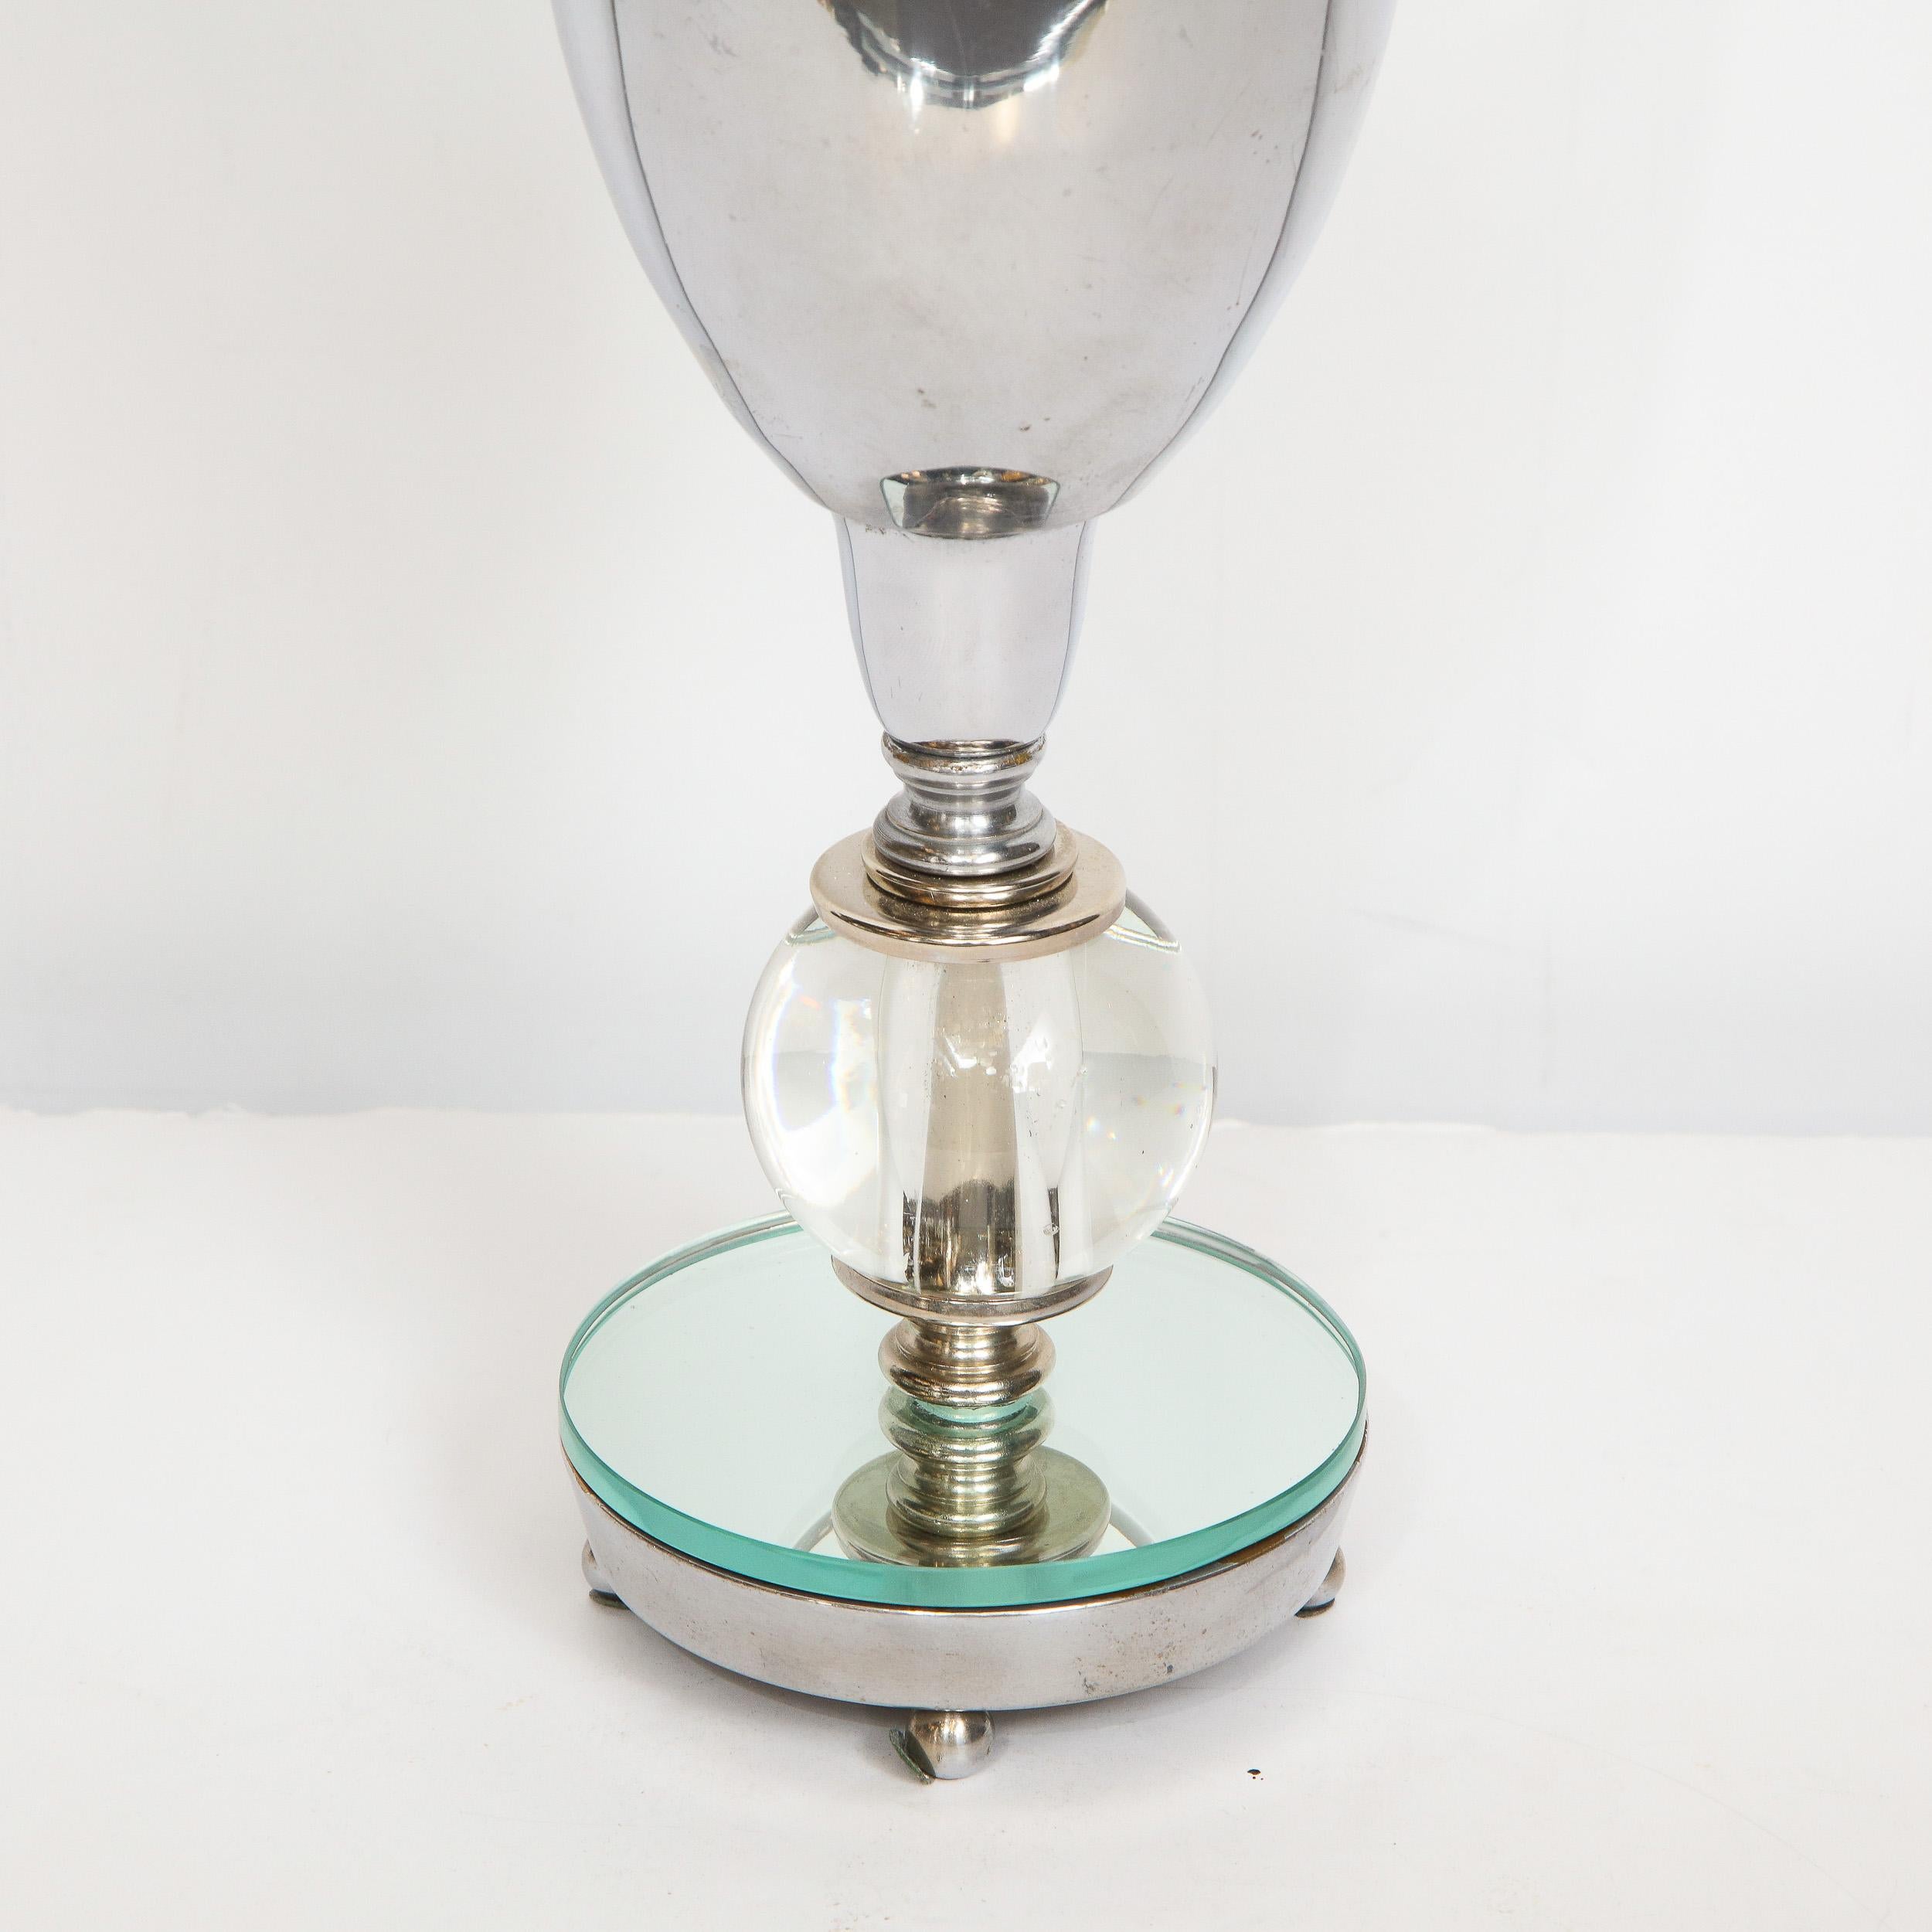 Ce luminaire Art déco glamour de l'ère de la machine a été réalisé aux États-Unis, vers 1935. Il est doté d'une base en chrome et en miroir reposant sur quatre pieds à boule. Le corps présente un ornement orbital translucide au centre, surmonté d'un